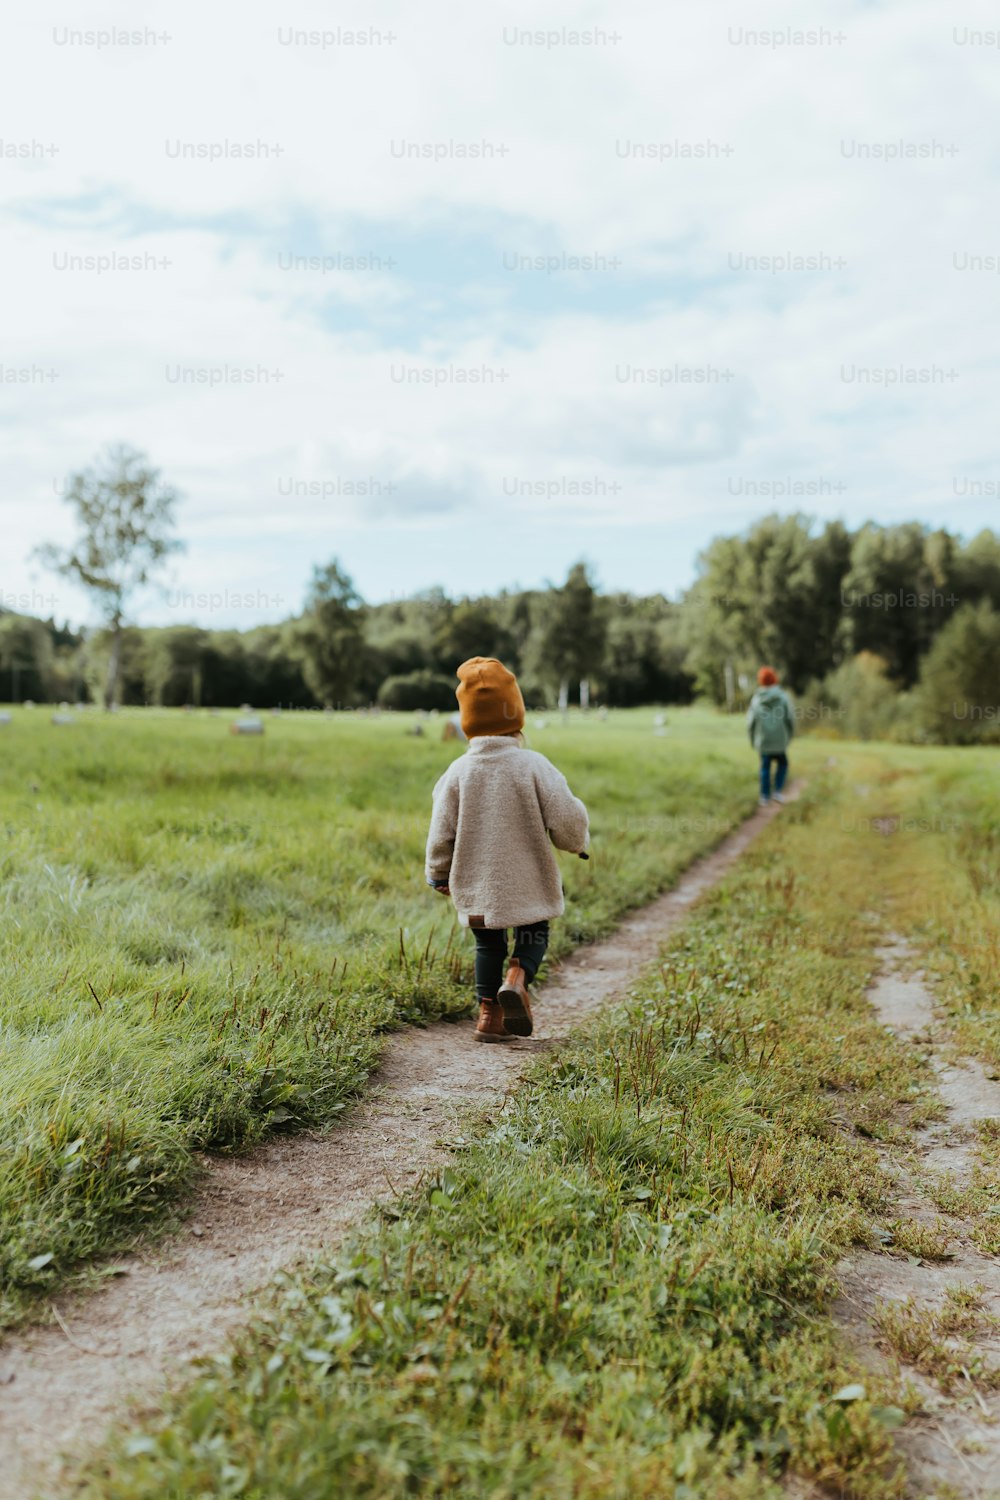 Una niña caminando por un camino de tierra